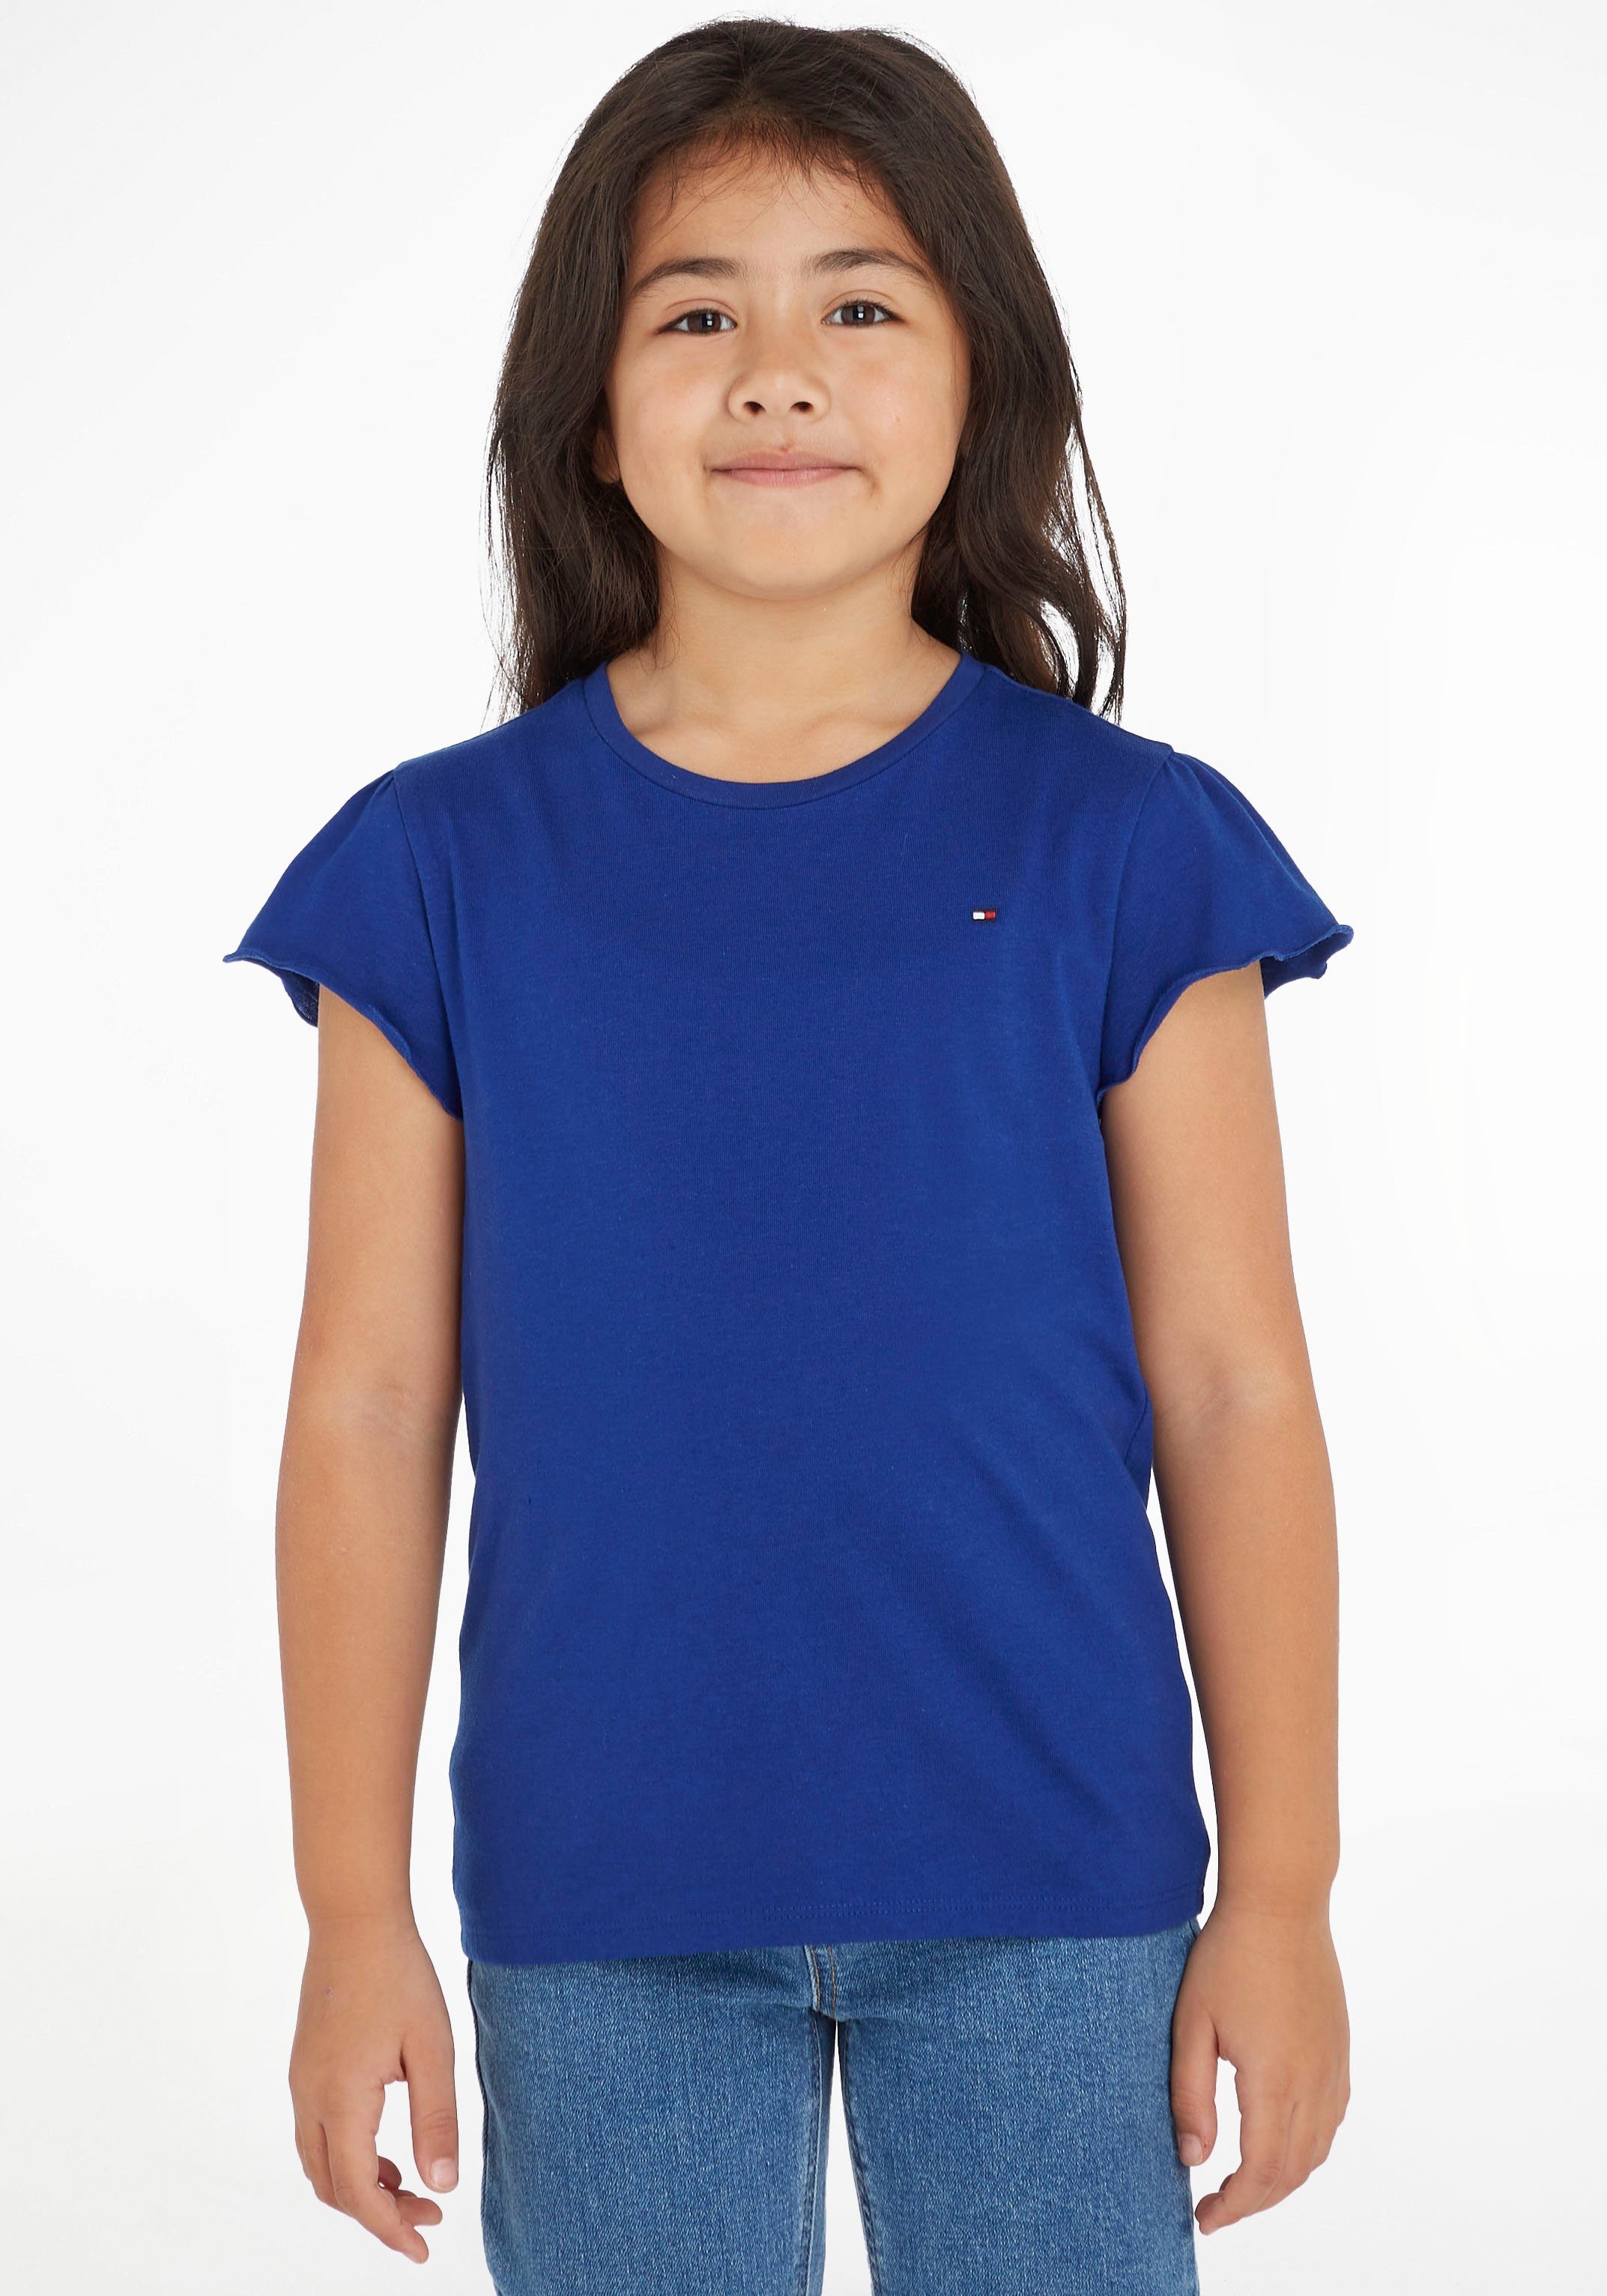 Ein neues Produkt ist eingetroffen Tommy Hilfiger T-Shirt ESSENTIAL RUFFLE dezentem Kinder TOP Label Kids Junior S/S Navy_Voyage MiniMe,mit SLEEVE